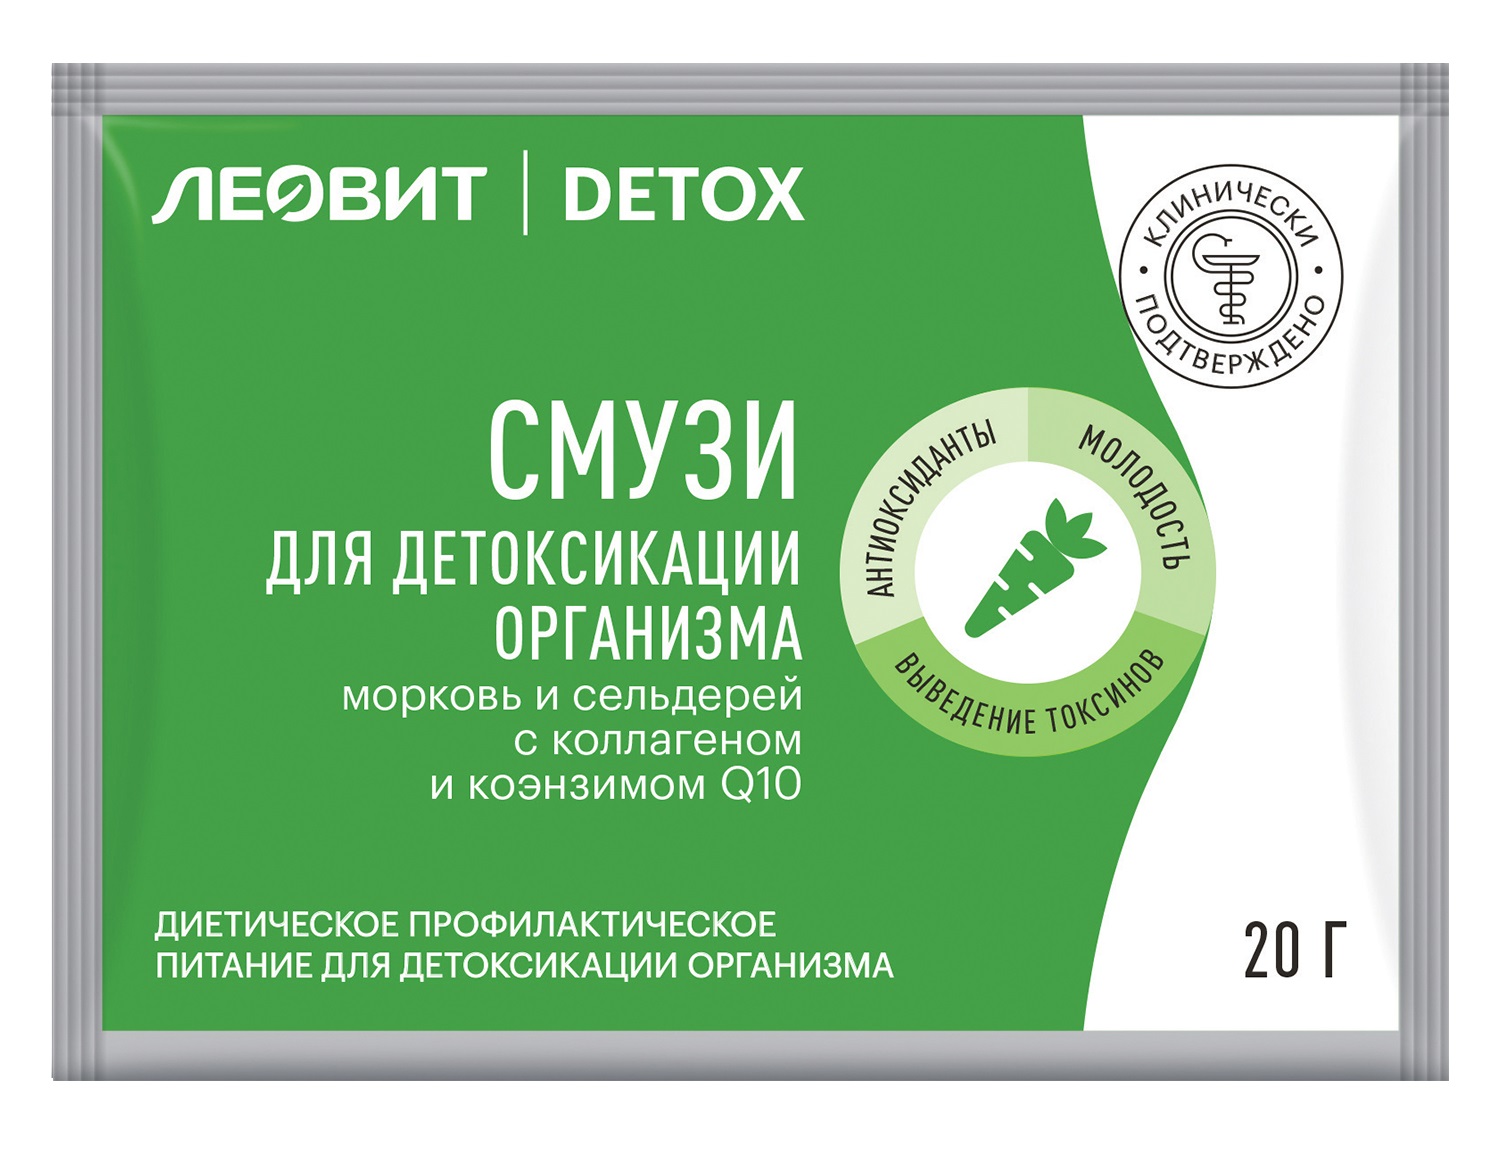 Леовит Смузи Морковь и сельдерей с коллагеном для детоксикации организма, 20 г (Леовит, Detox) фото 0